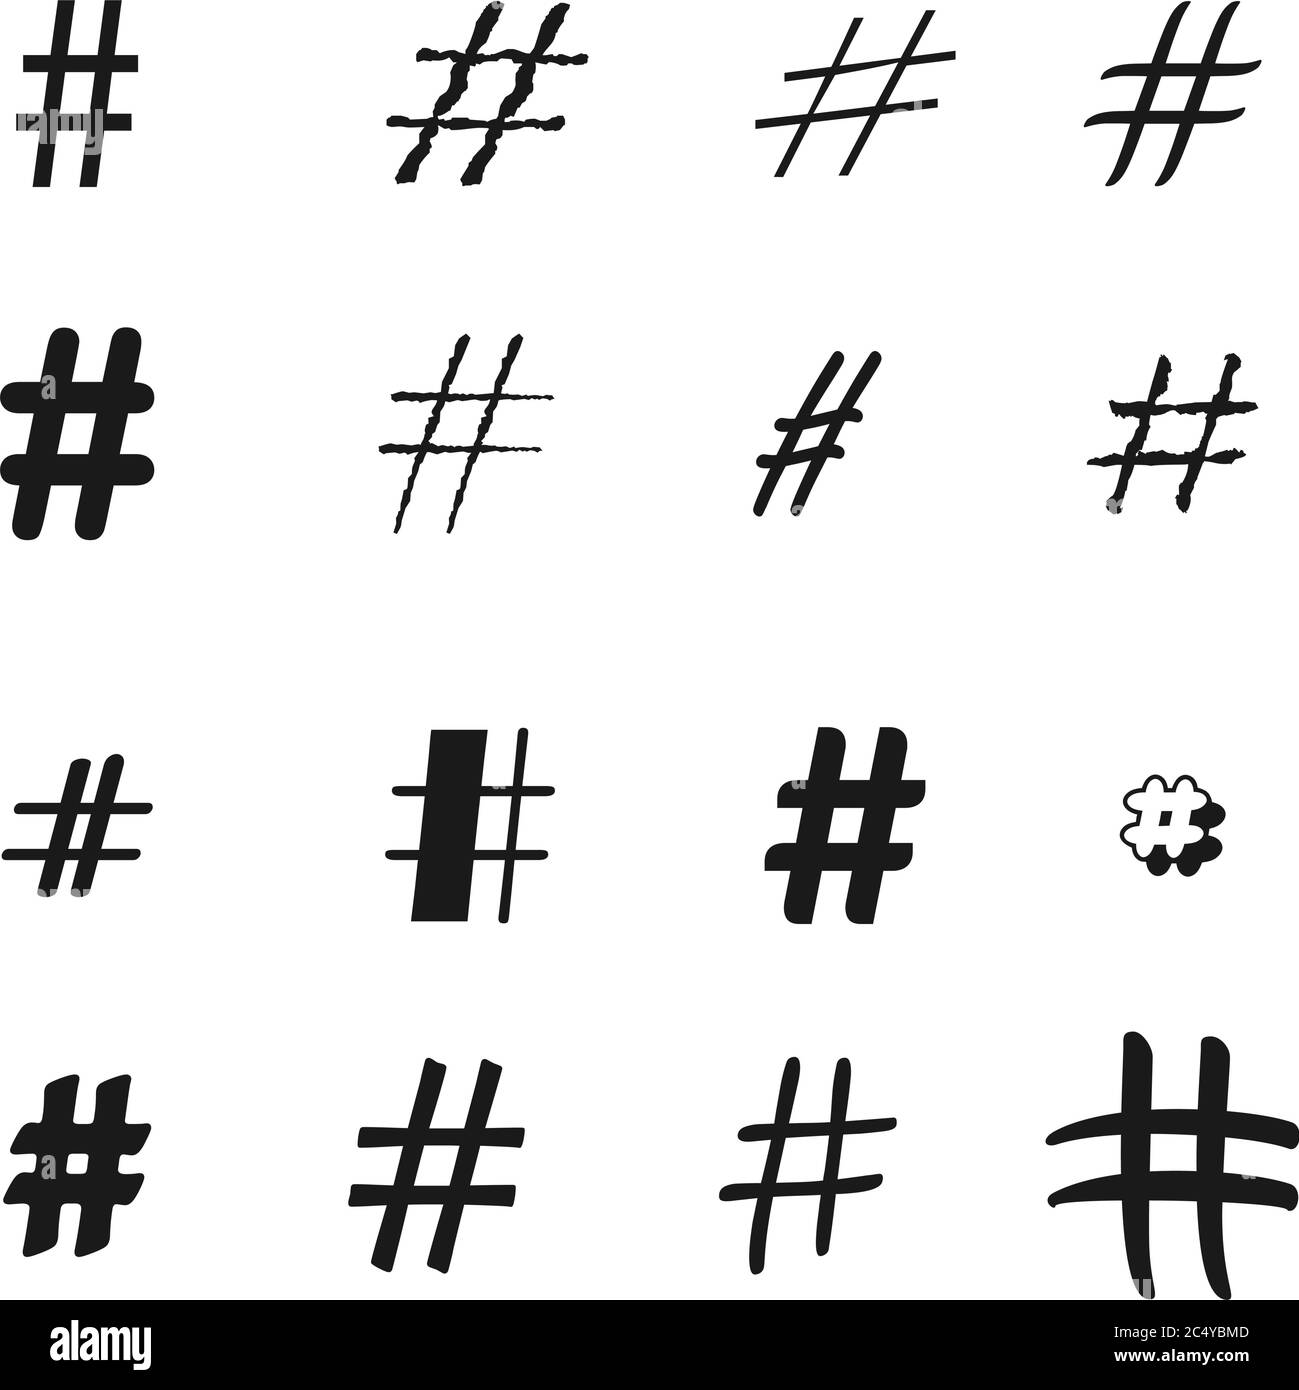 Hashtag sign Banque d'images vectorielles - Alamy